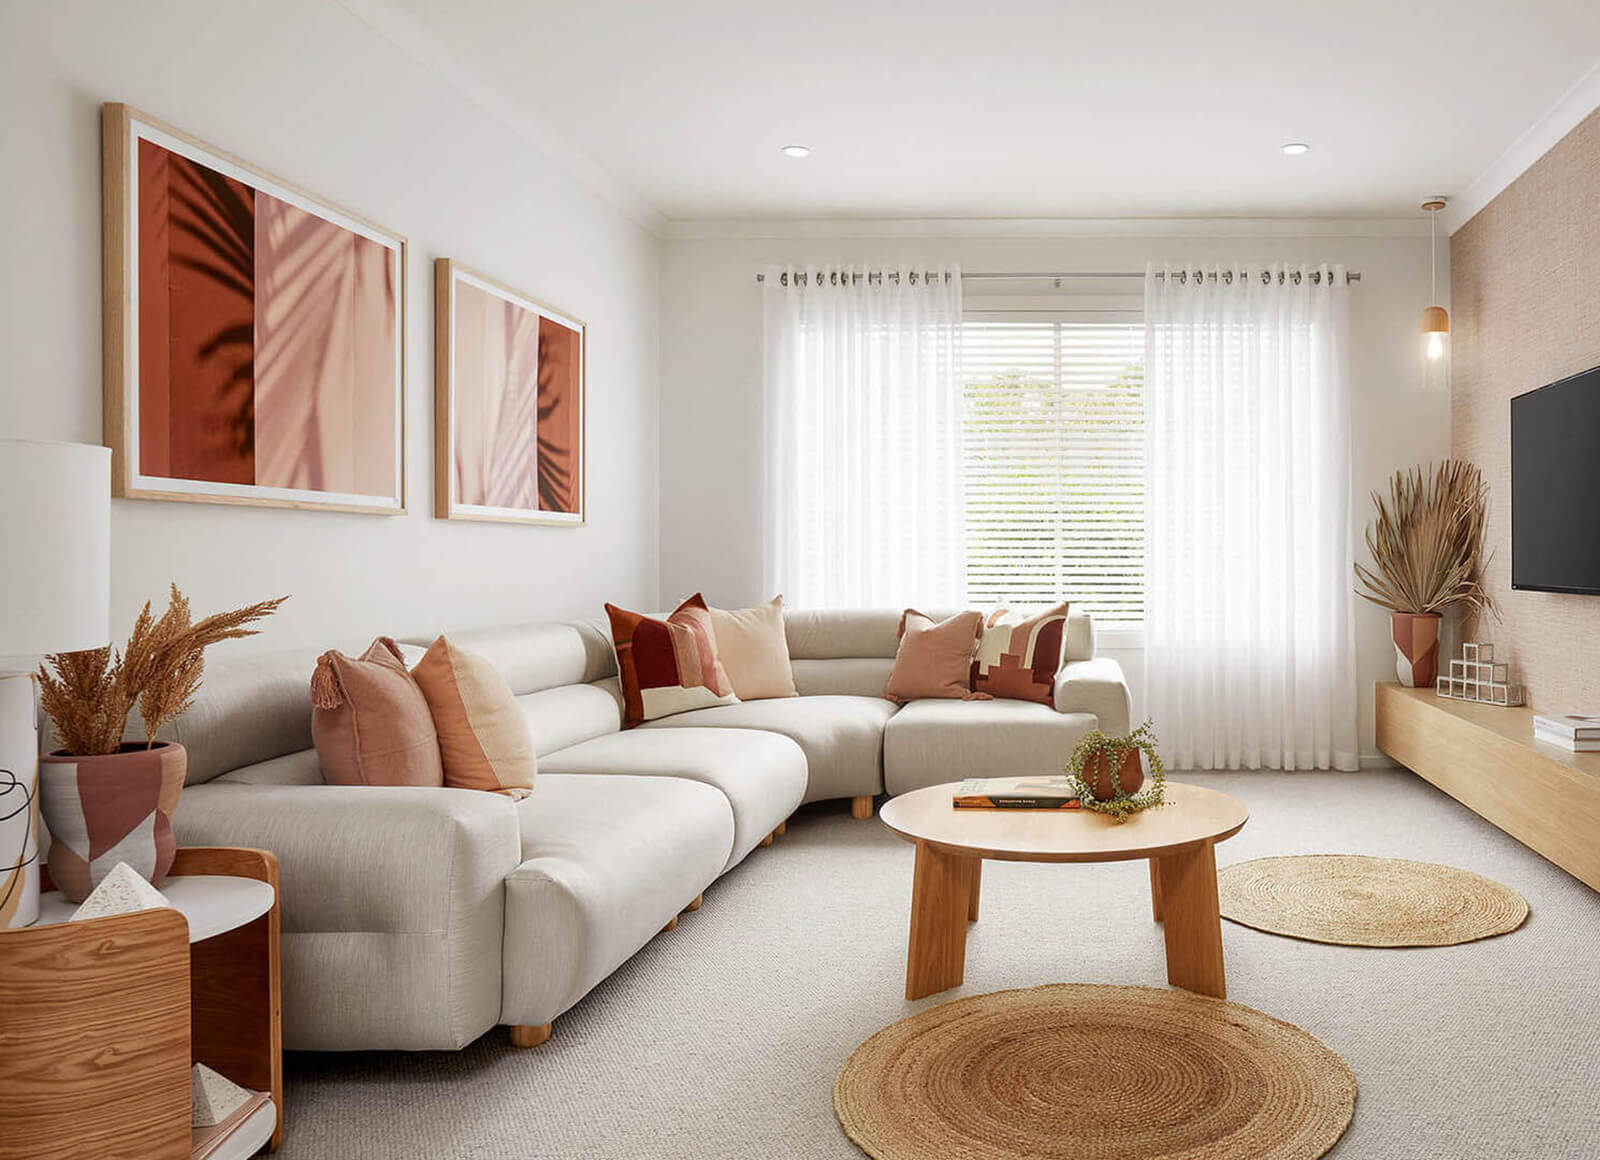 Texture-Lounge-Room-Ideas-Carlisle-Homes4.jpg